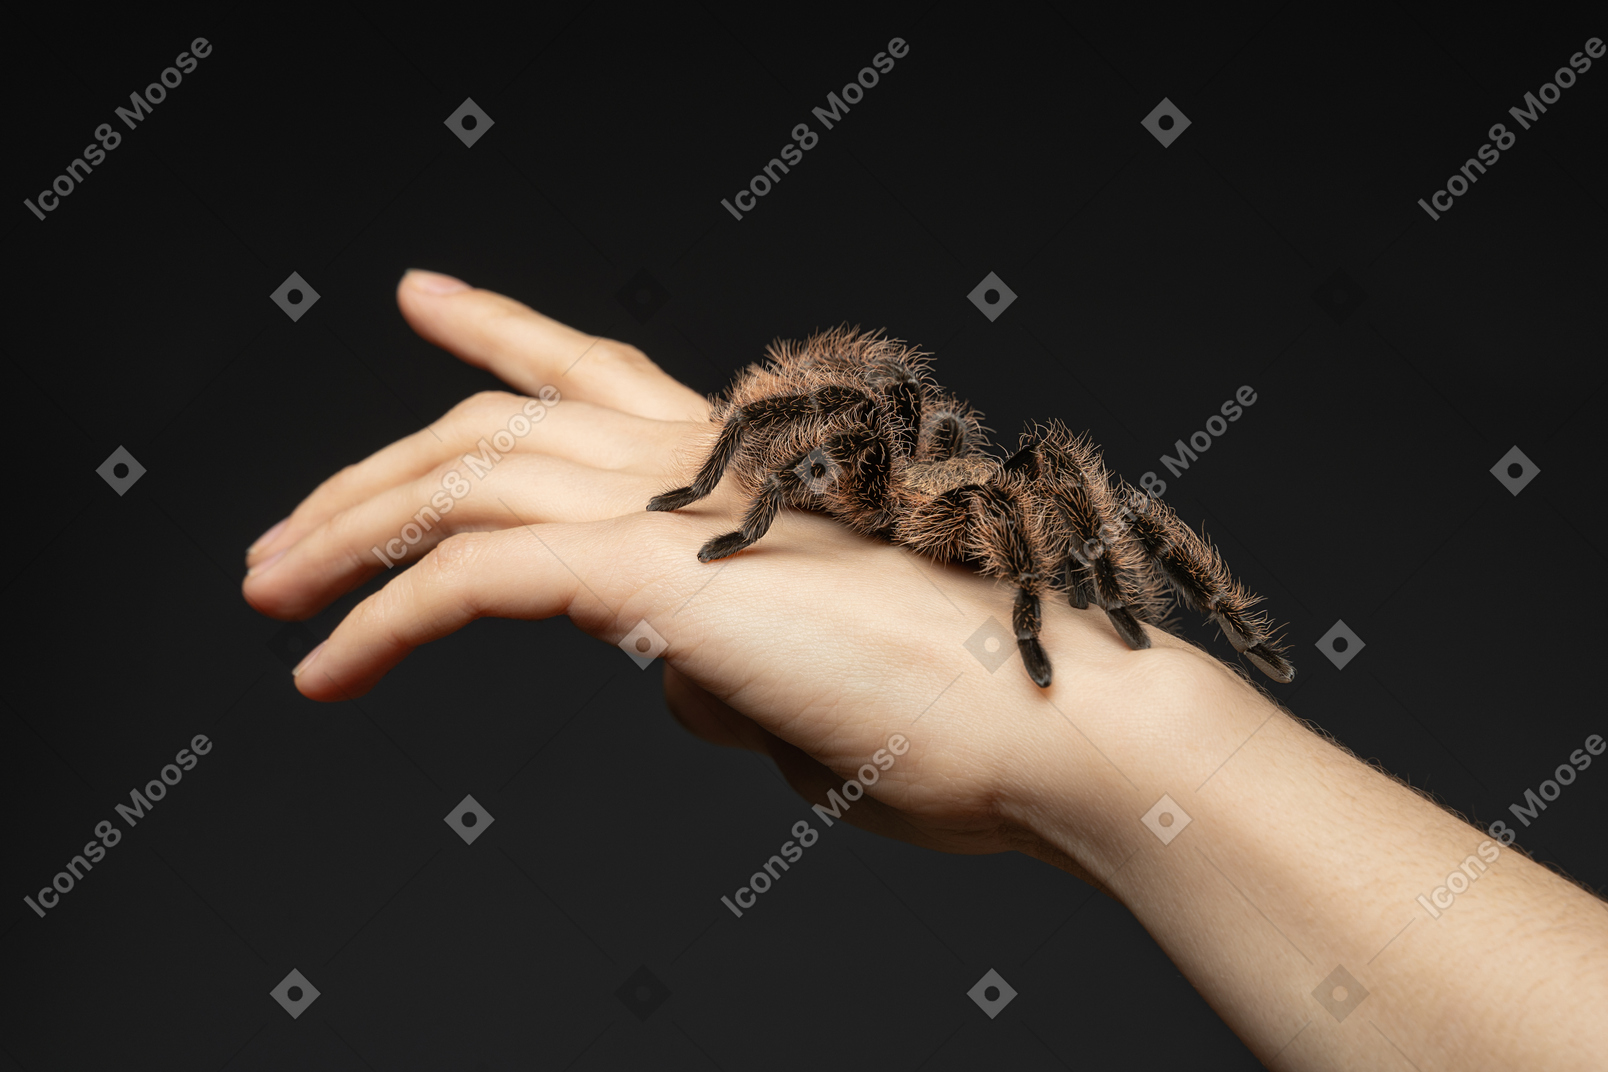 Araignée sur une main humaine